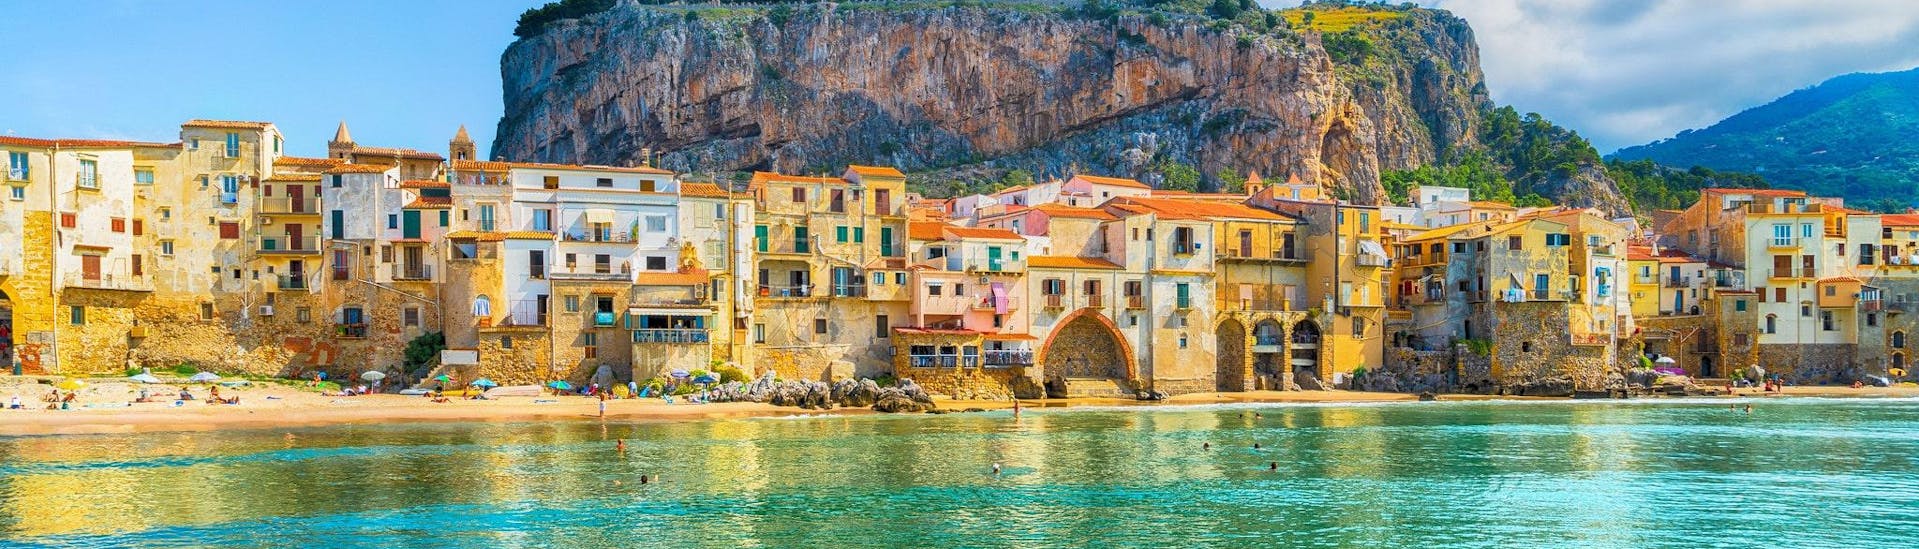 Durante una gita in barca a Cefalù, in Sicilia, si può ammirare il villaggio di età medievale dall'acqua.